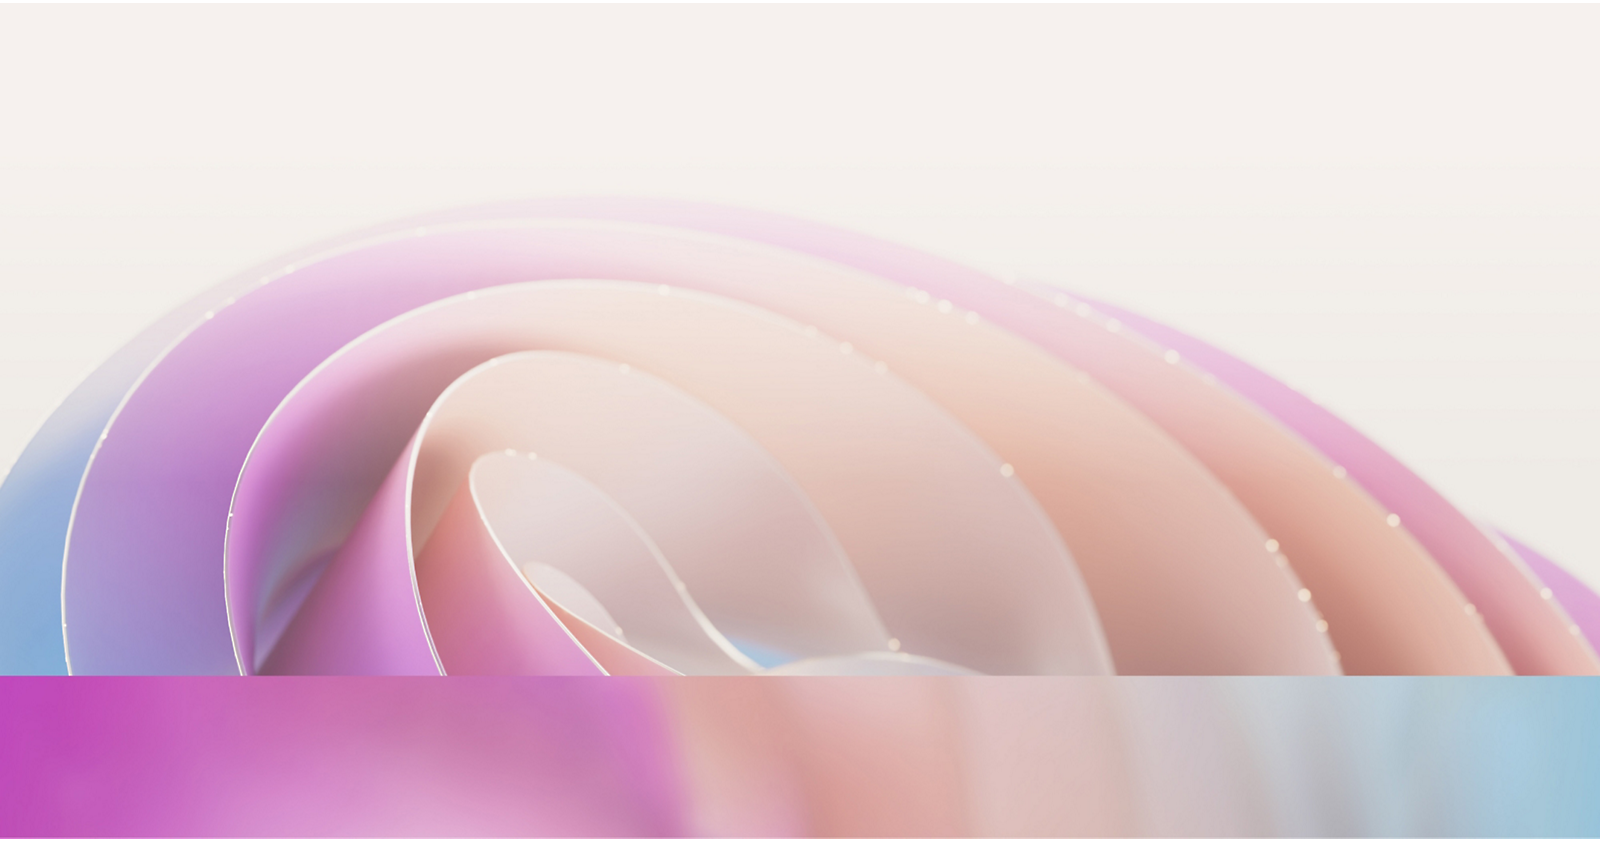 Αφηρημένη εικόνα που εμφανίζει απαλές, επικαλυπτόμενες πολύχρωμες καμπύλες σε παστέλ αποχρώσεις ροζ, μοβ και μπλε 